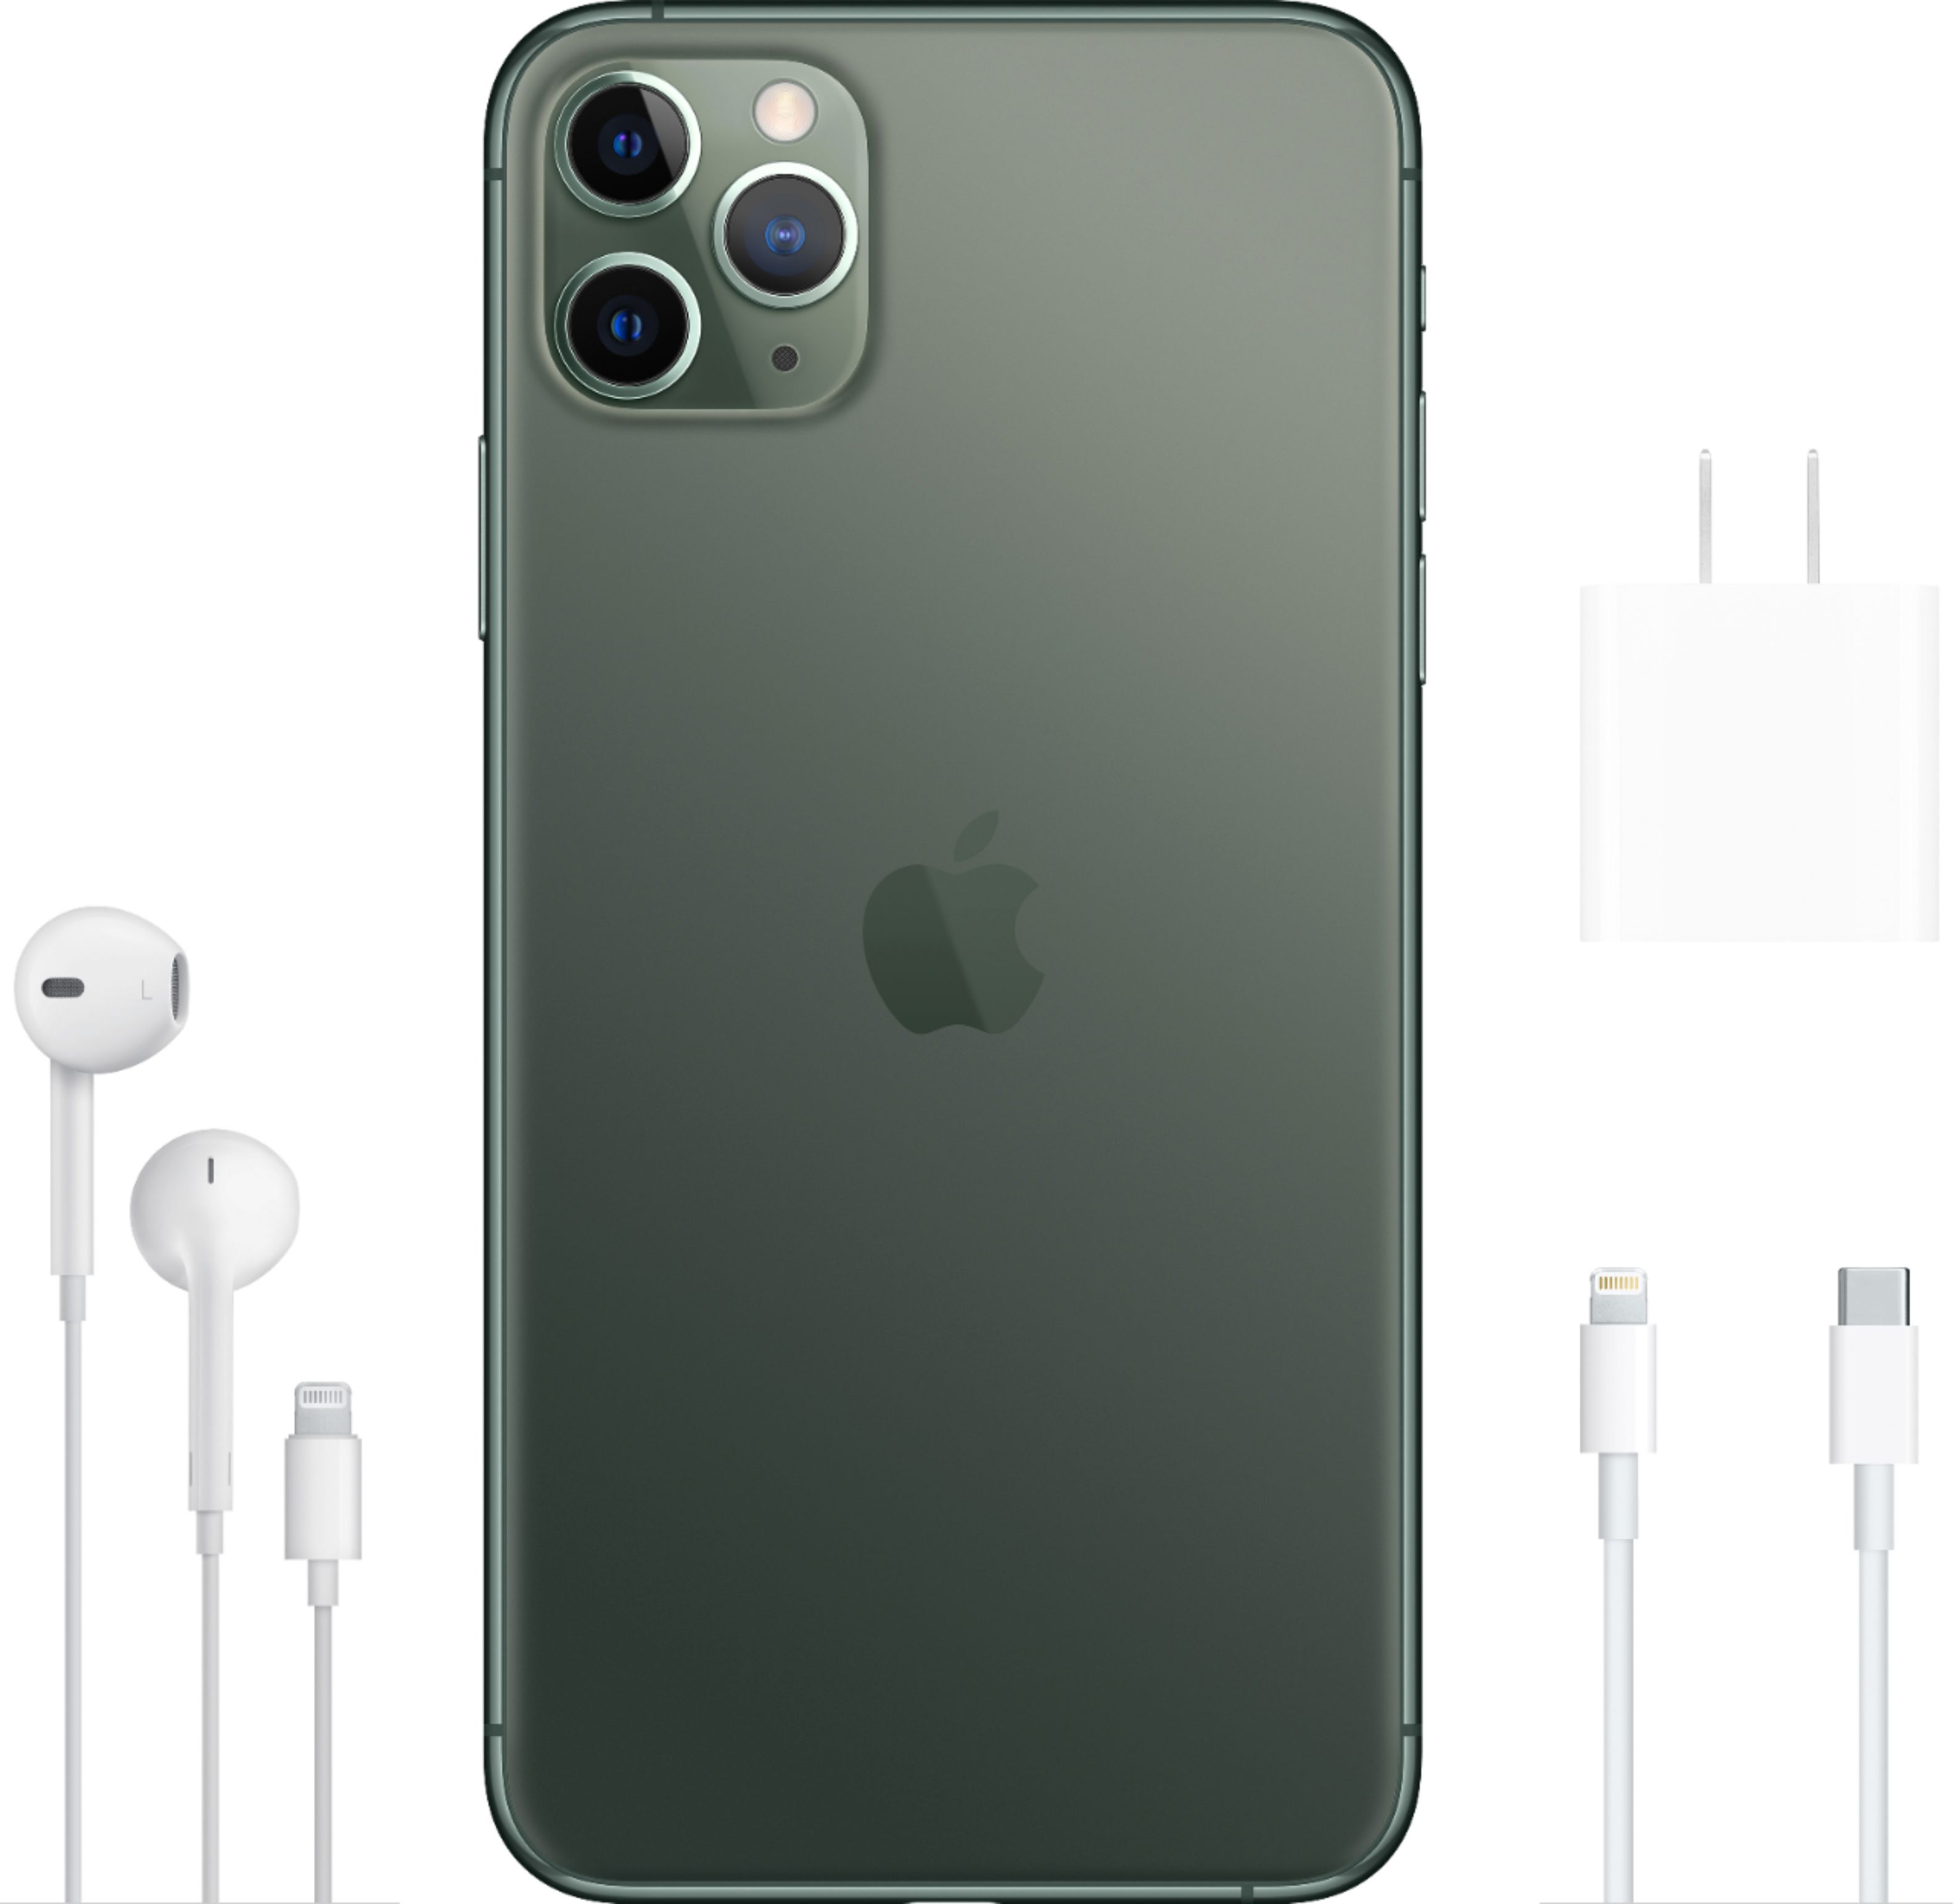 Apple Iphone 11 Pro Max 64gb Midnight Green Sprint Mwh22ll A